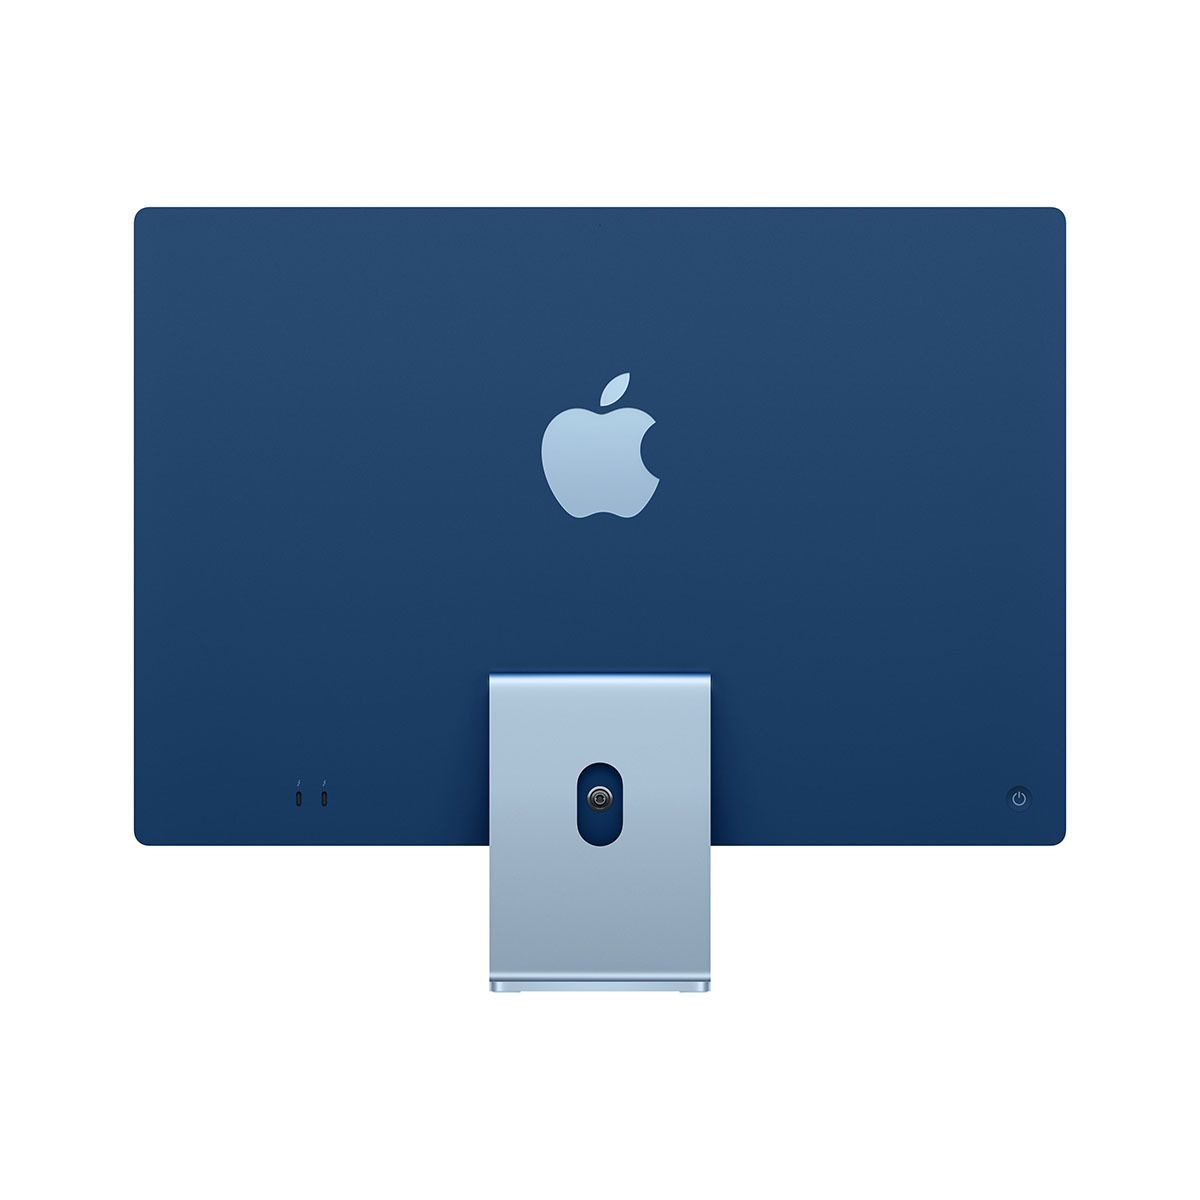 Apple 아이맥 24 M1,블루, 7코어, 256GB, 8코어, 8GB